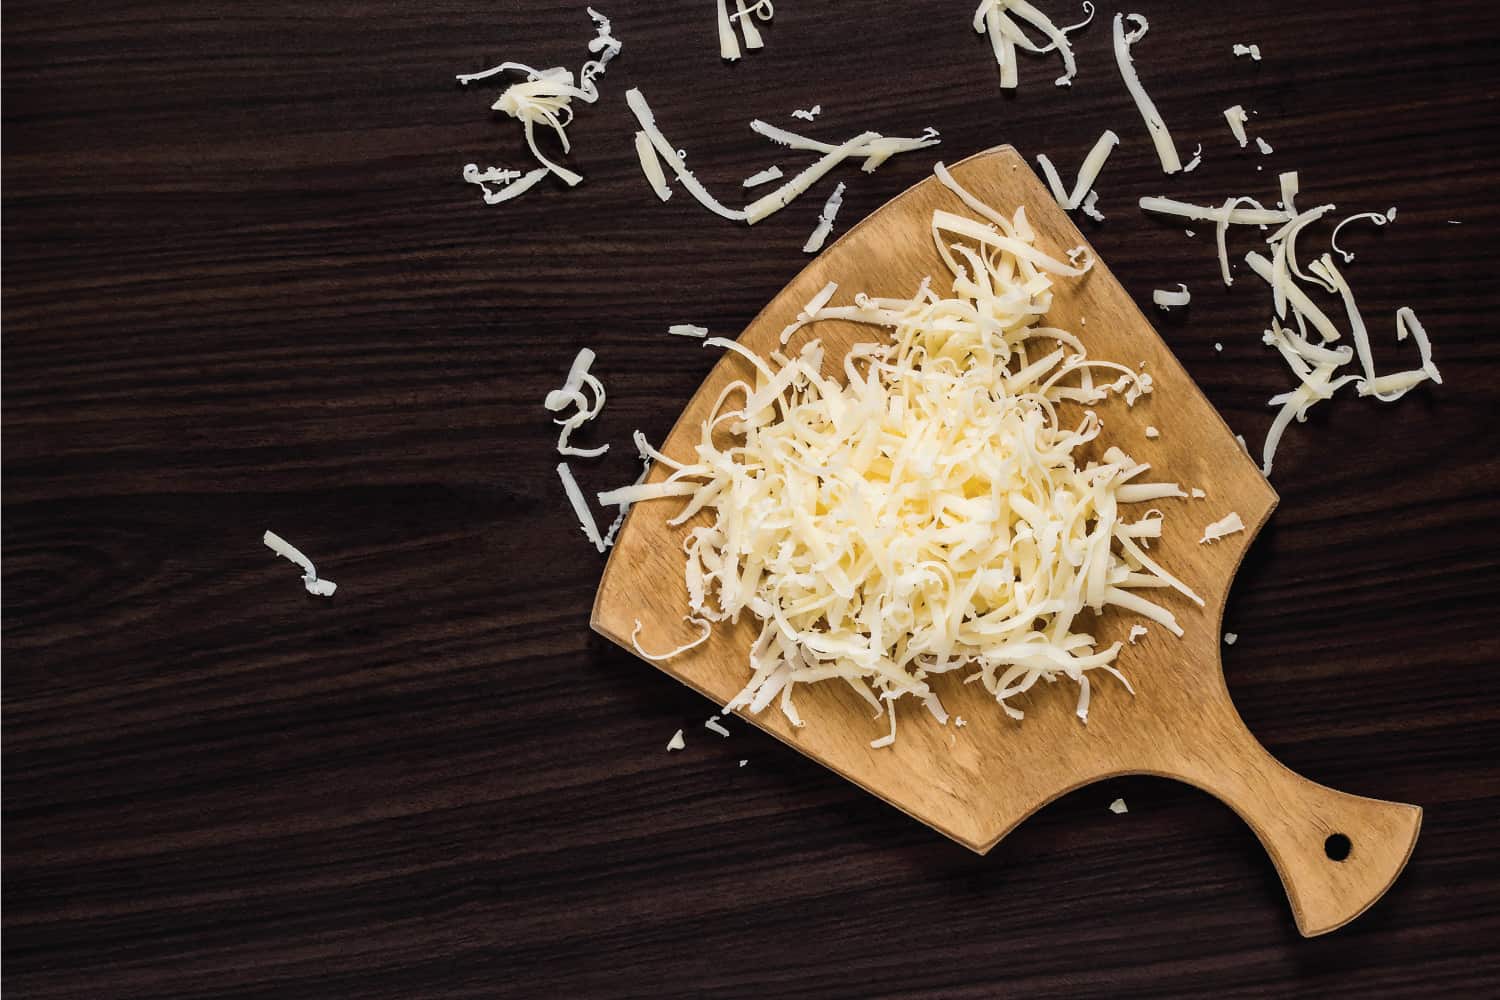 在深色背景的切菜板上烹饪用的磨碎的奶酪